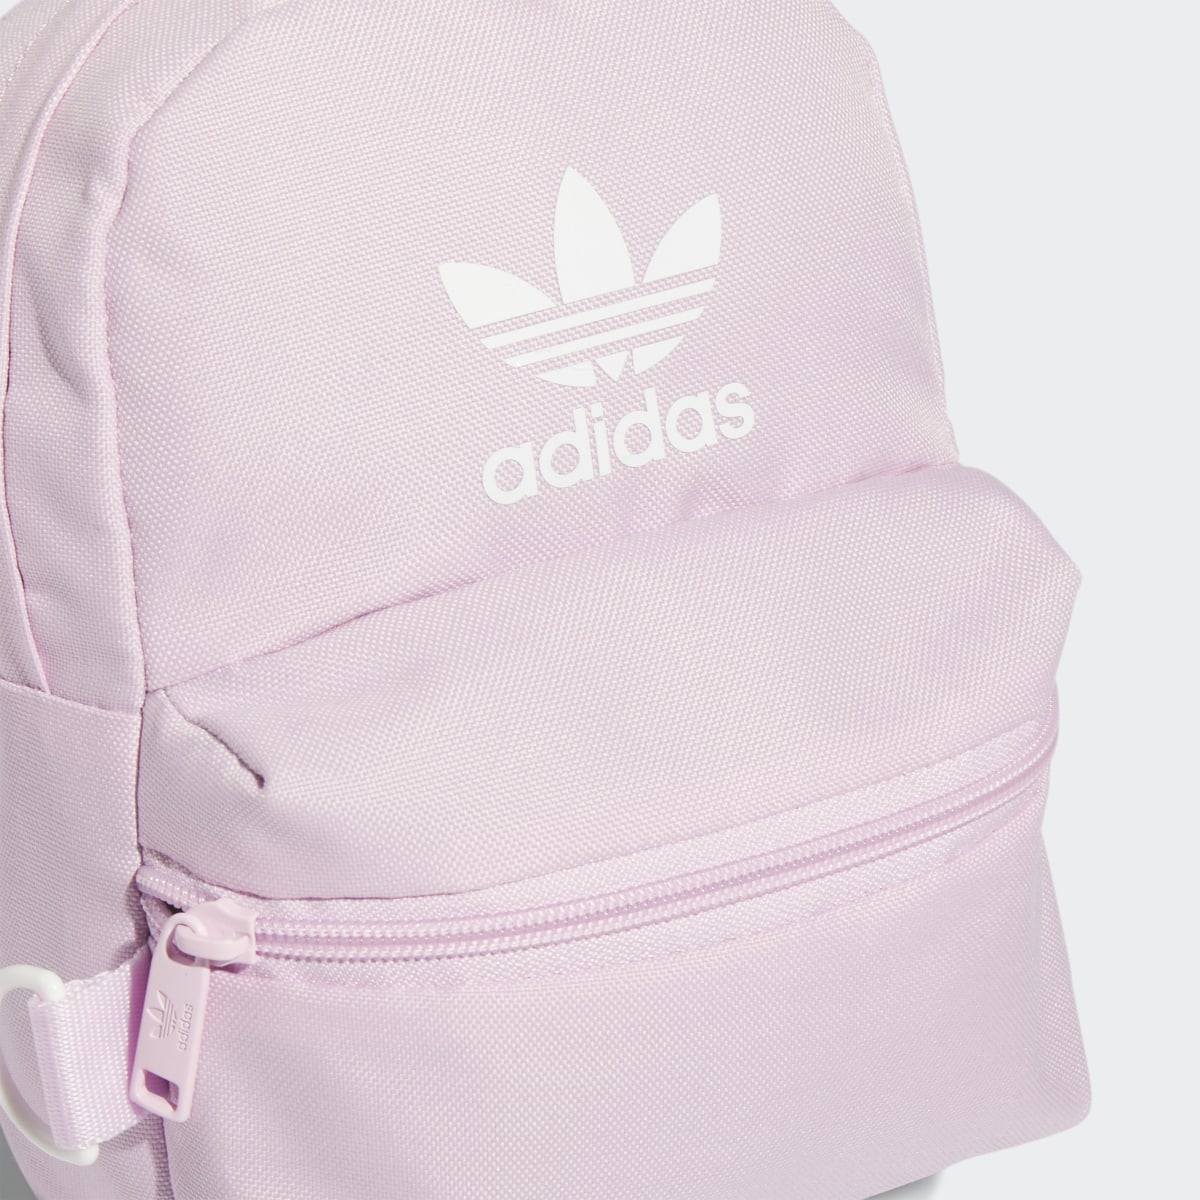 Adidas Trefoil 2.0 Mini Backpack. 7